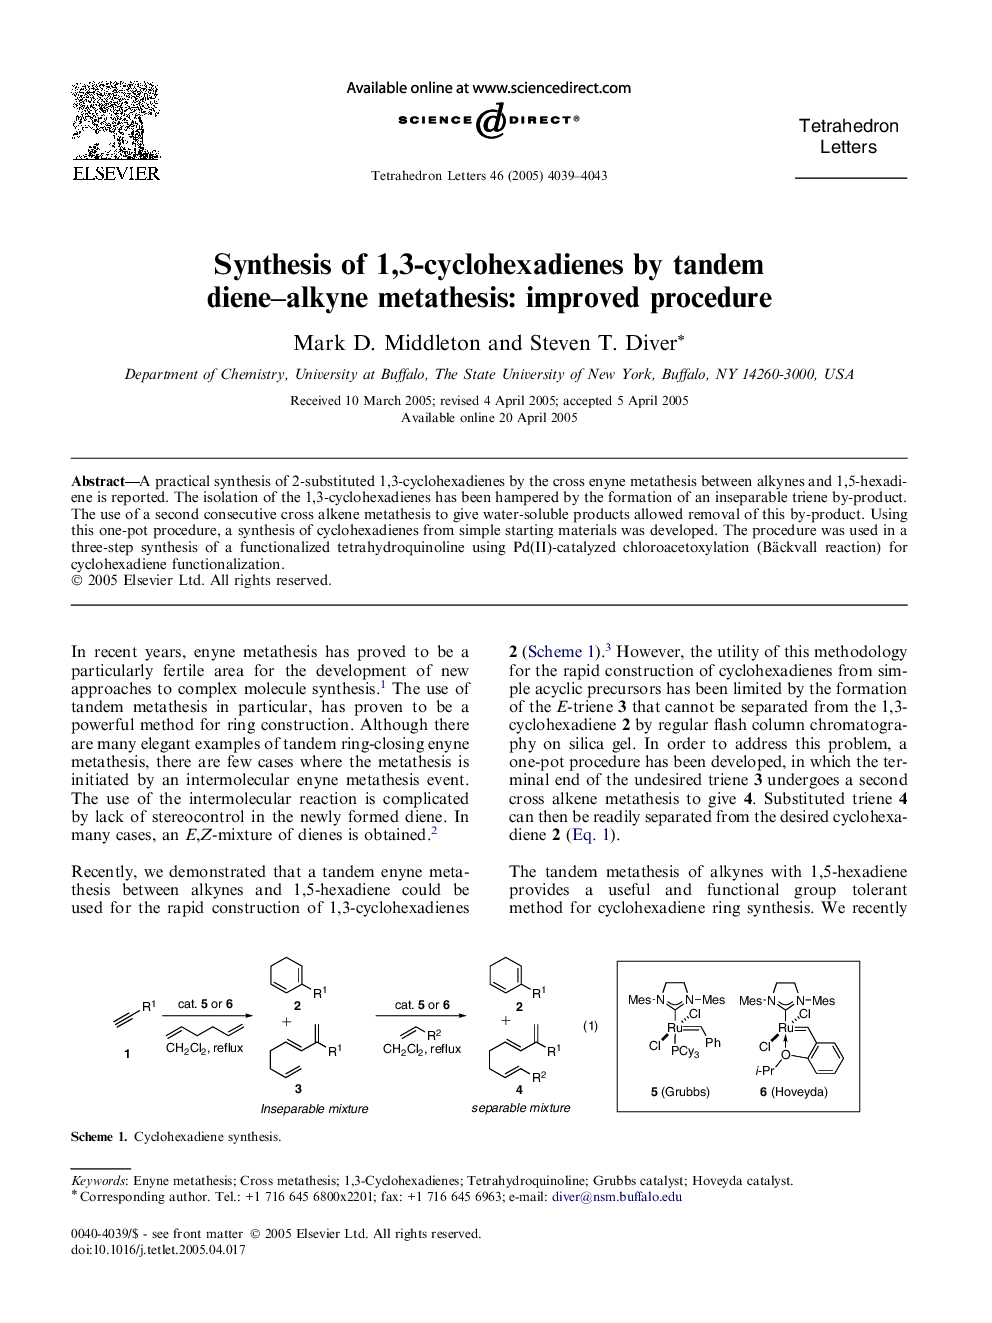 Synthesis of 1,3-cyclohexadienes by tandem diene-alkyne metathesis: improved procedure